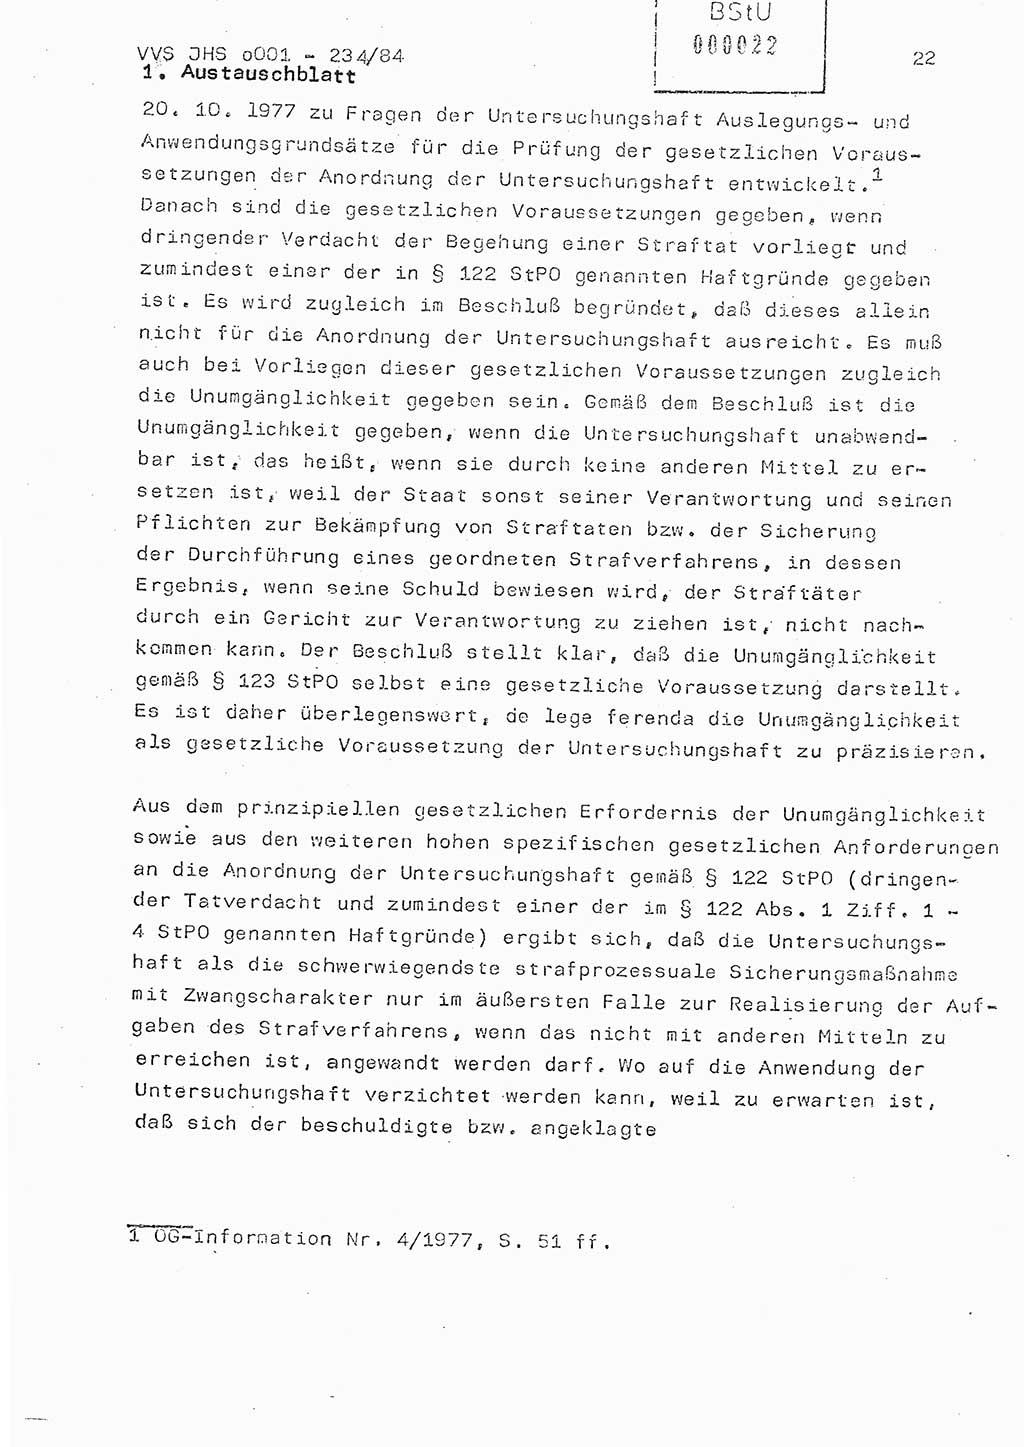 Dissertation Oberst Siegfried Rataizick (Abt. ⅩⅣ), Oberstleutnant Volkmar Heinz (Abt. ⅩⅣ), Oberstleutnant Werner Stein (HA Ⅸ), Hauptmann Heinz Conrad (JHS), Ministerium für Staatssicherheit (MfS) [Deutsche Demokratische Republik (DDR)], Juristische Hochschule (JHS), Vertrauliche Verschlußsache (VVS) o001-234/84, Potsdam 1984, Seite 22 (Diss. MfS DDR JHS VVS o001-234/84 1984, S. 22)